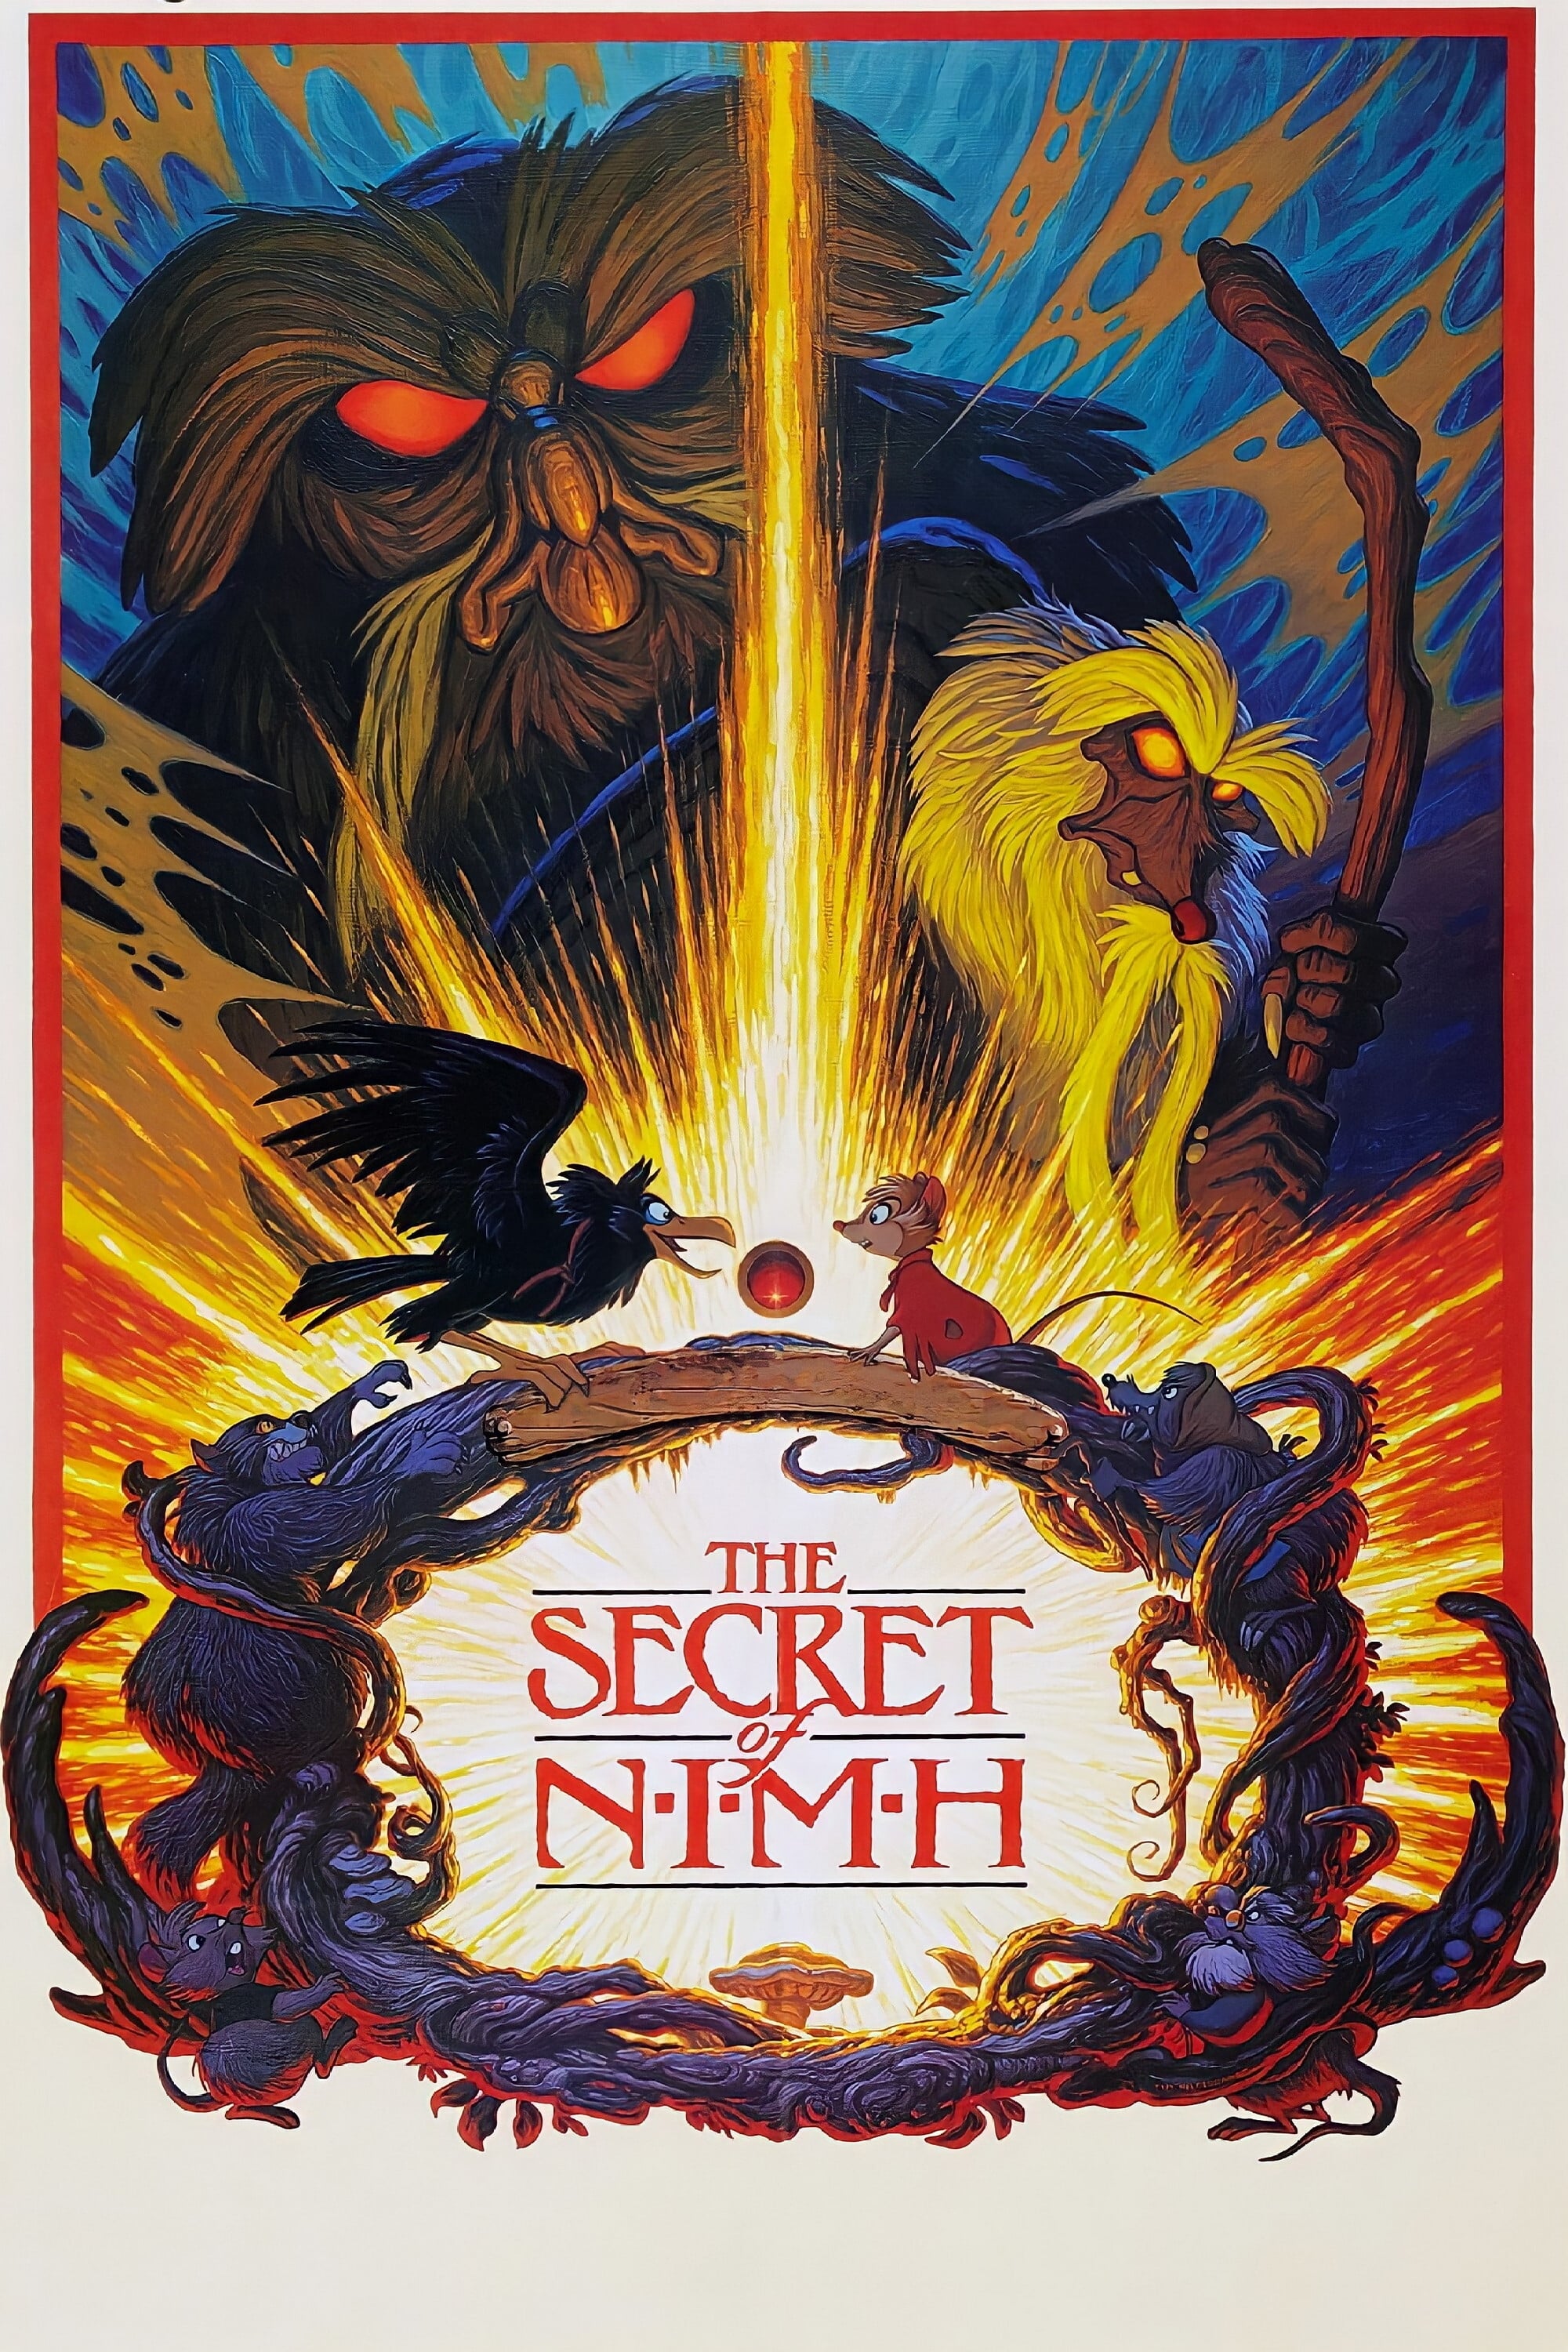 Mrs. Brisby und das Geheimnis von Nimh (1982)